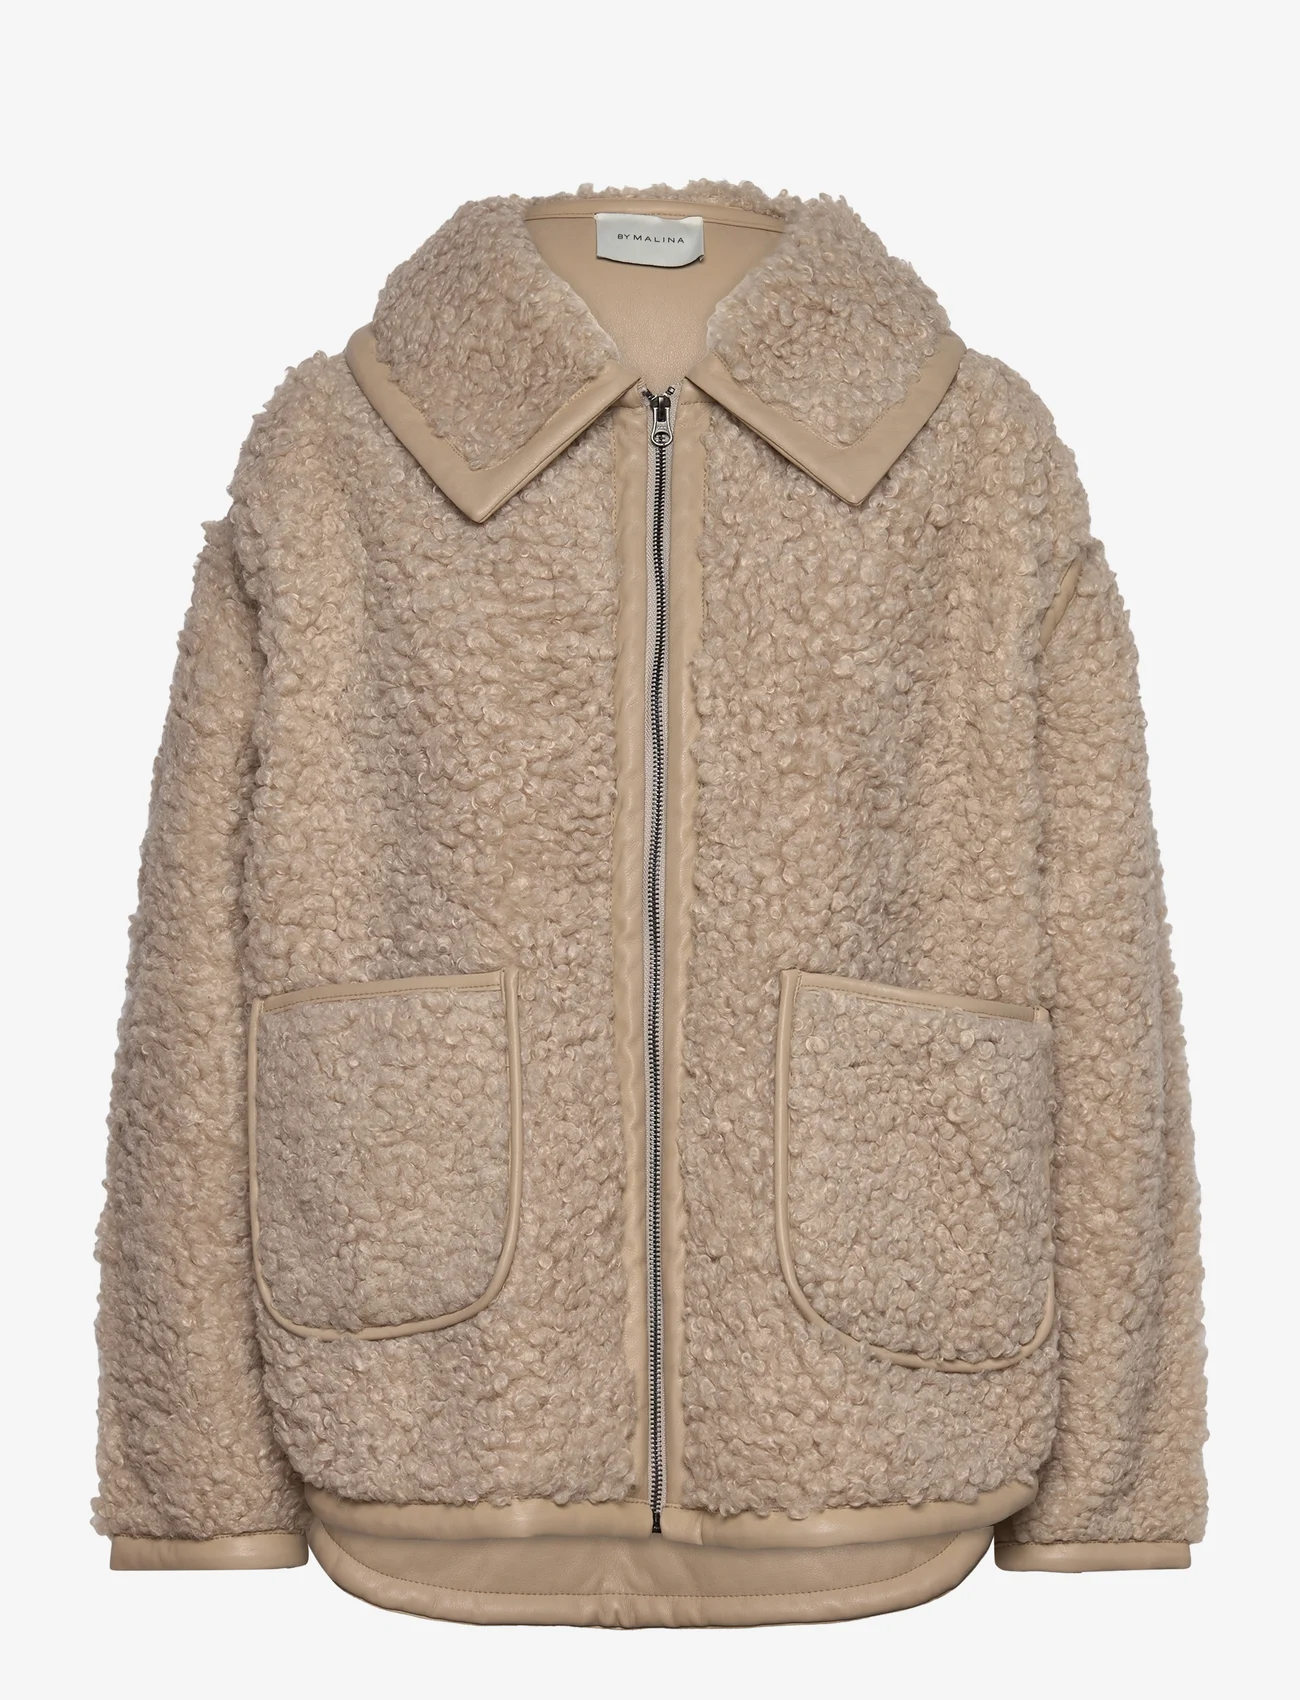 Malina - Miriam oversized faux fur jacket - kunstpelz - creme - 0